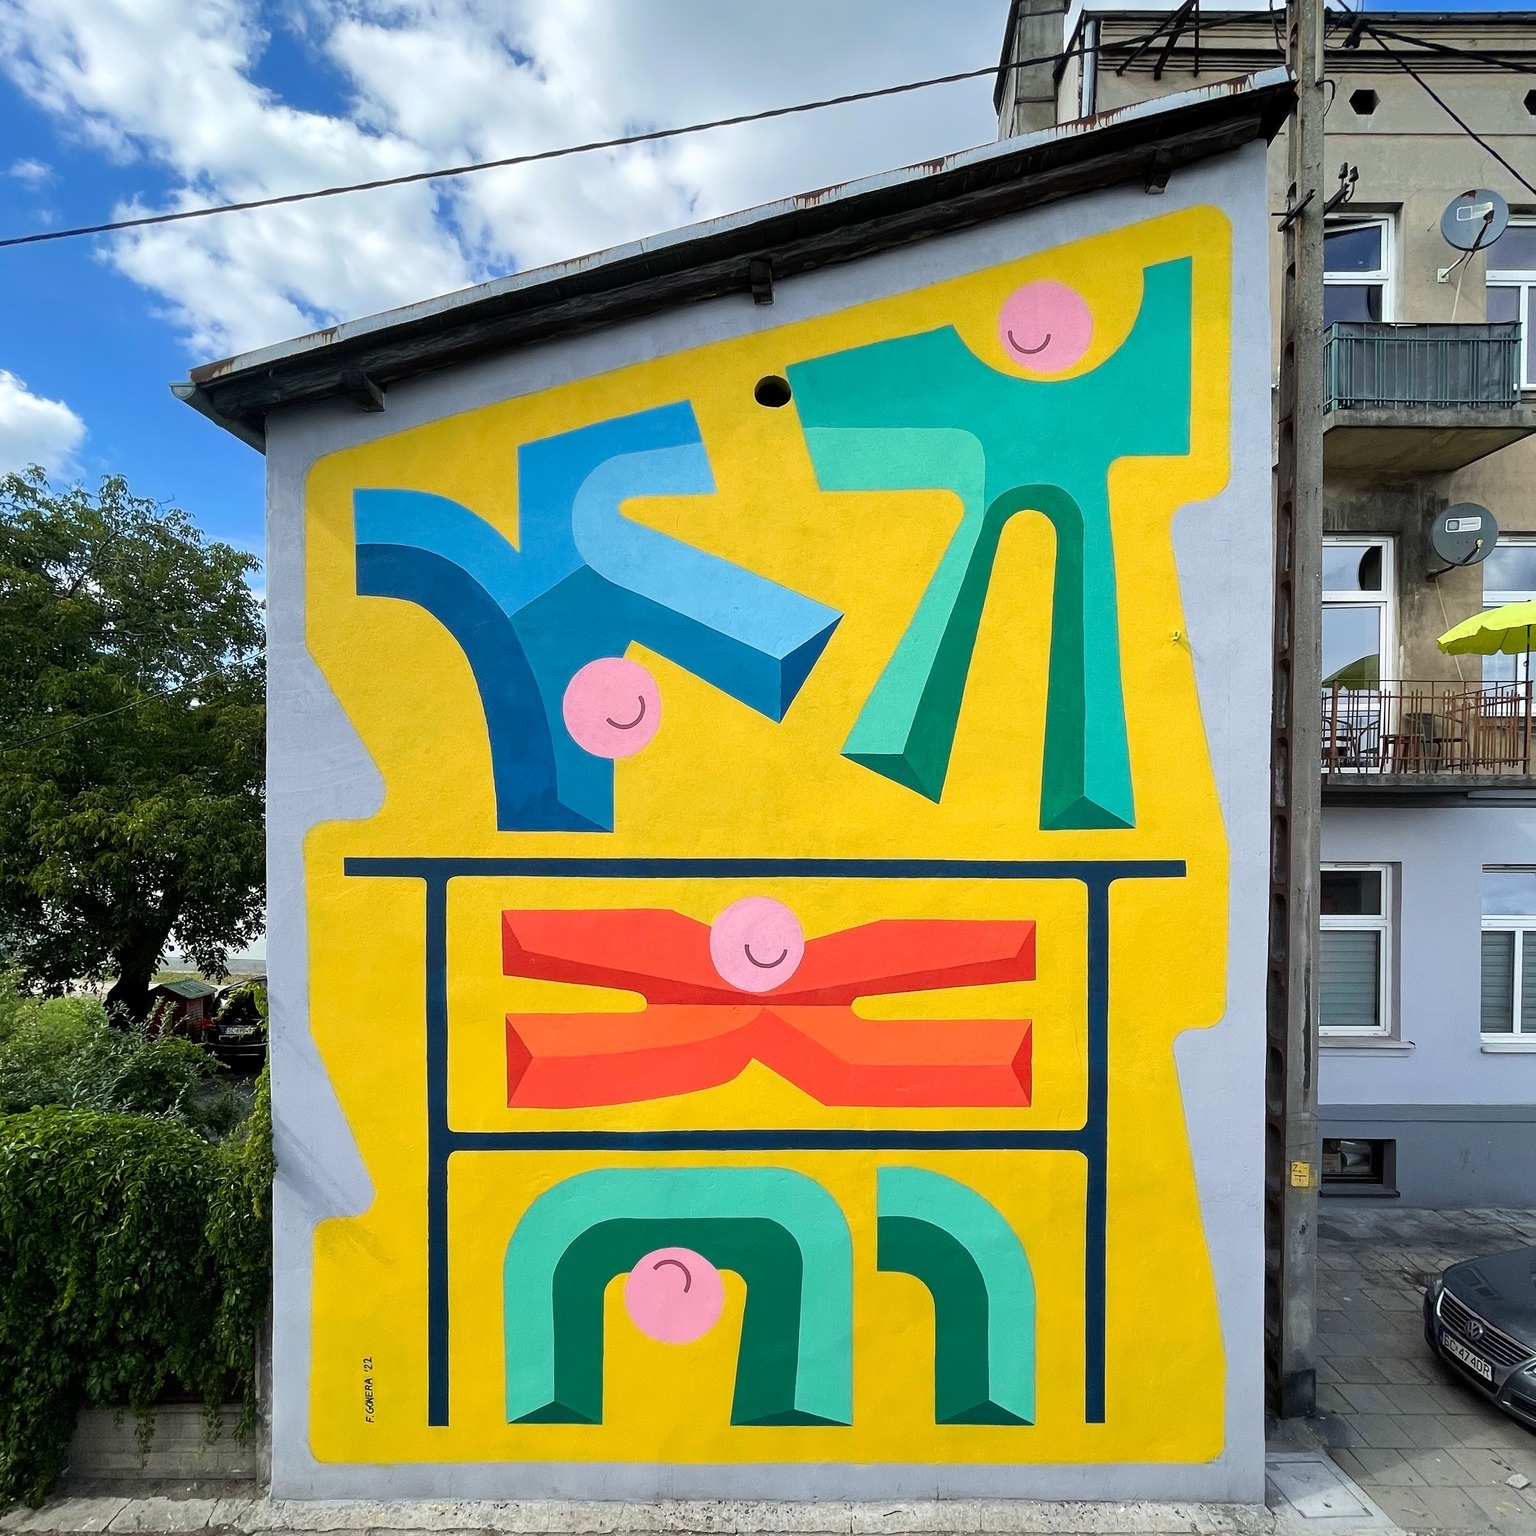 Widzieliście już nowy mural na ul. Mielczarskiego? To zapowiedź Festiwalu eFKA 2022 7